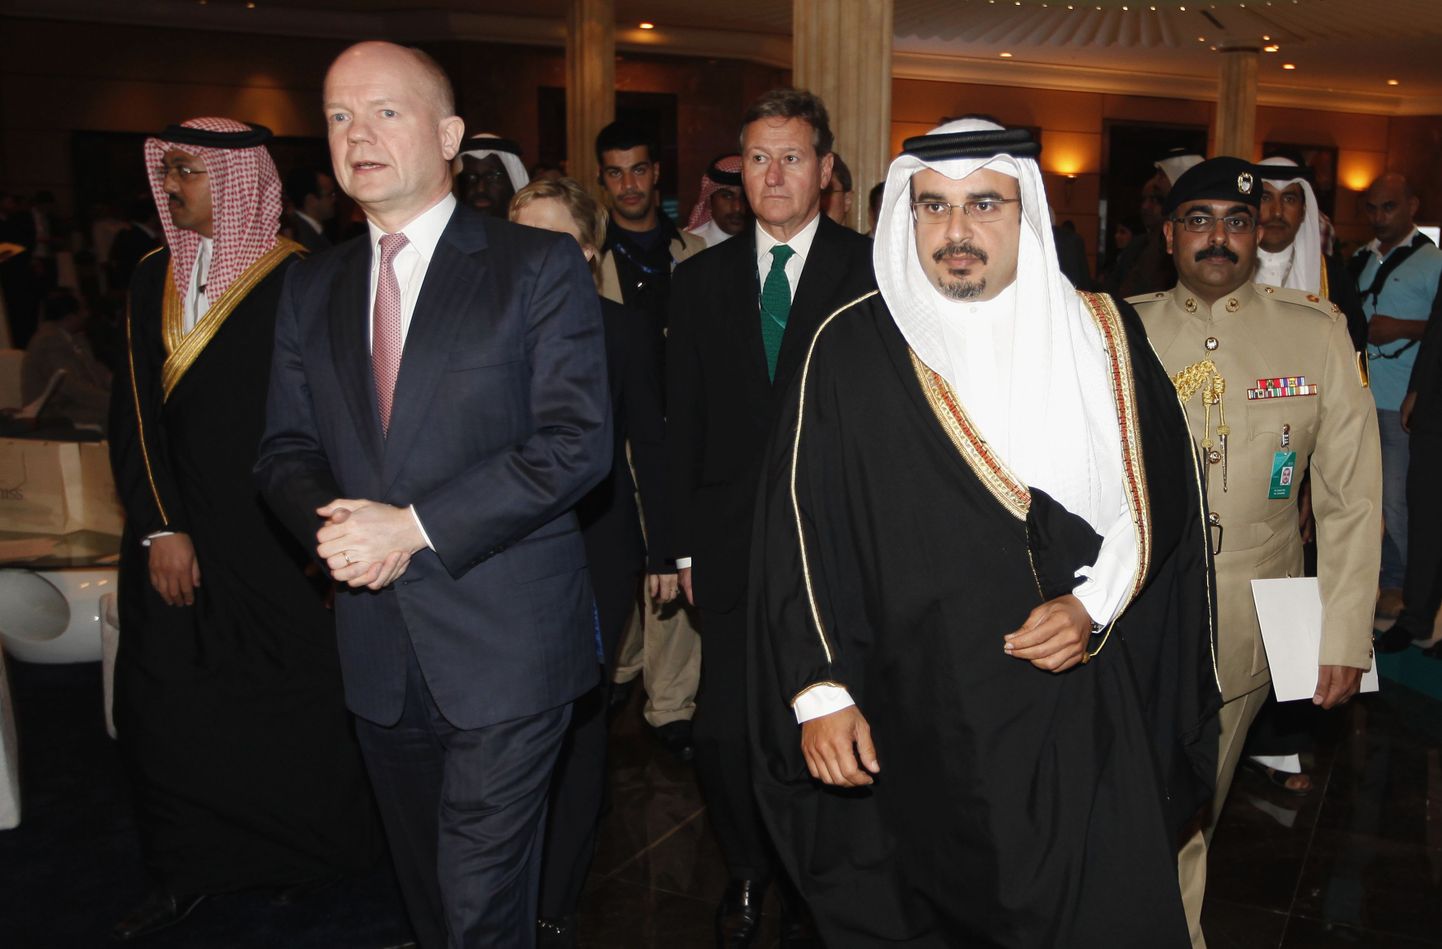 Briti välisminister William Hague koos Bahreini kroonprintsi Salman bin Hamad al-Khalifaga (ees paremal).